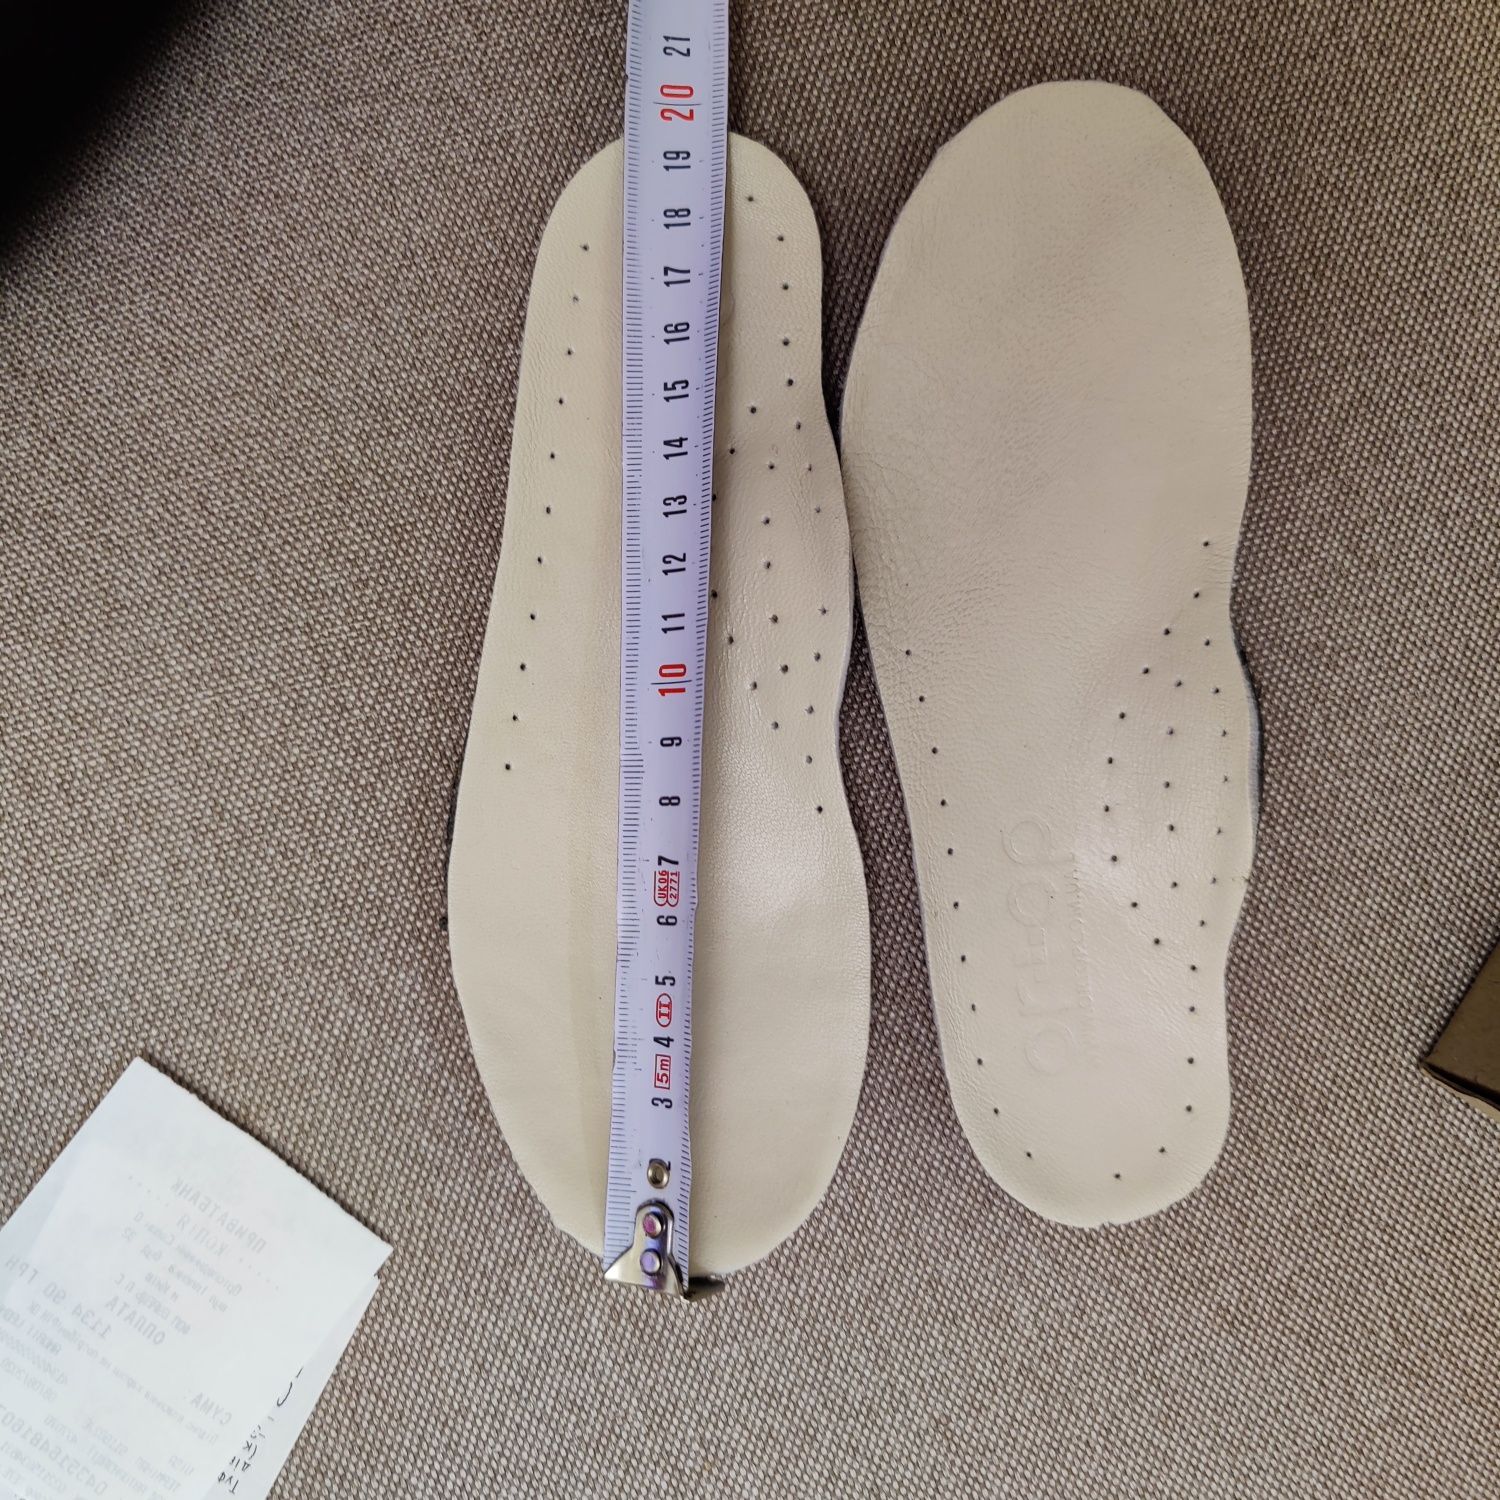 Ортопедические туфли Ortop 30р, стелька 20 см, в хорошем состоянии